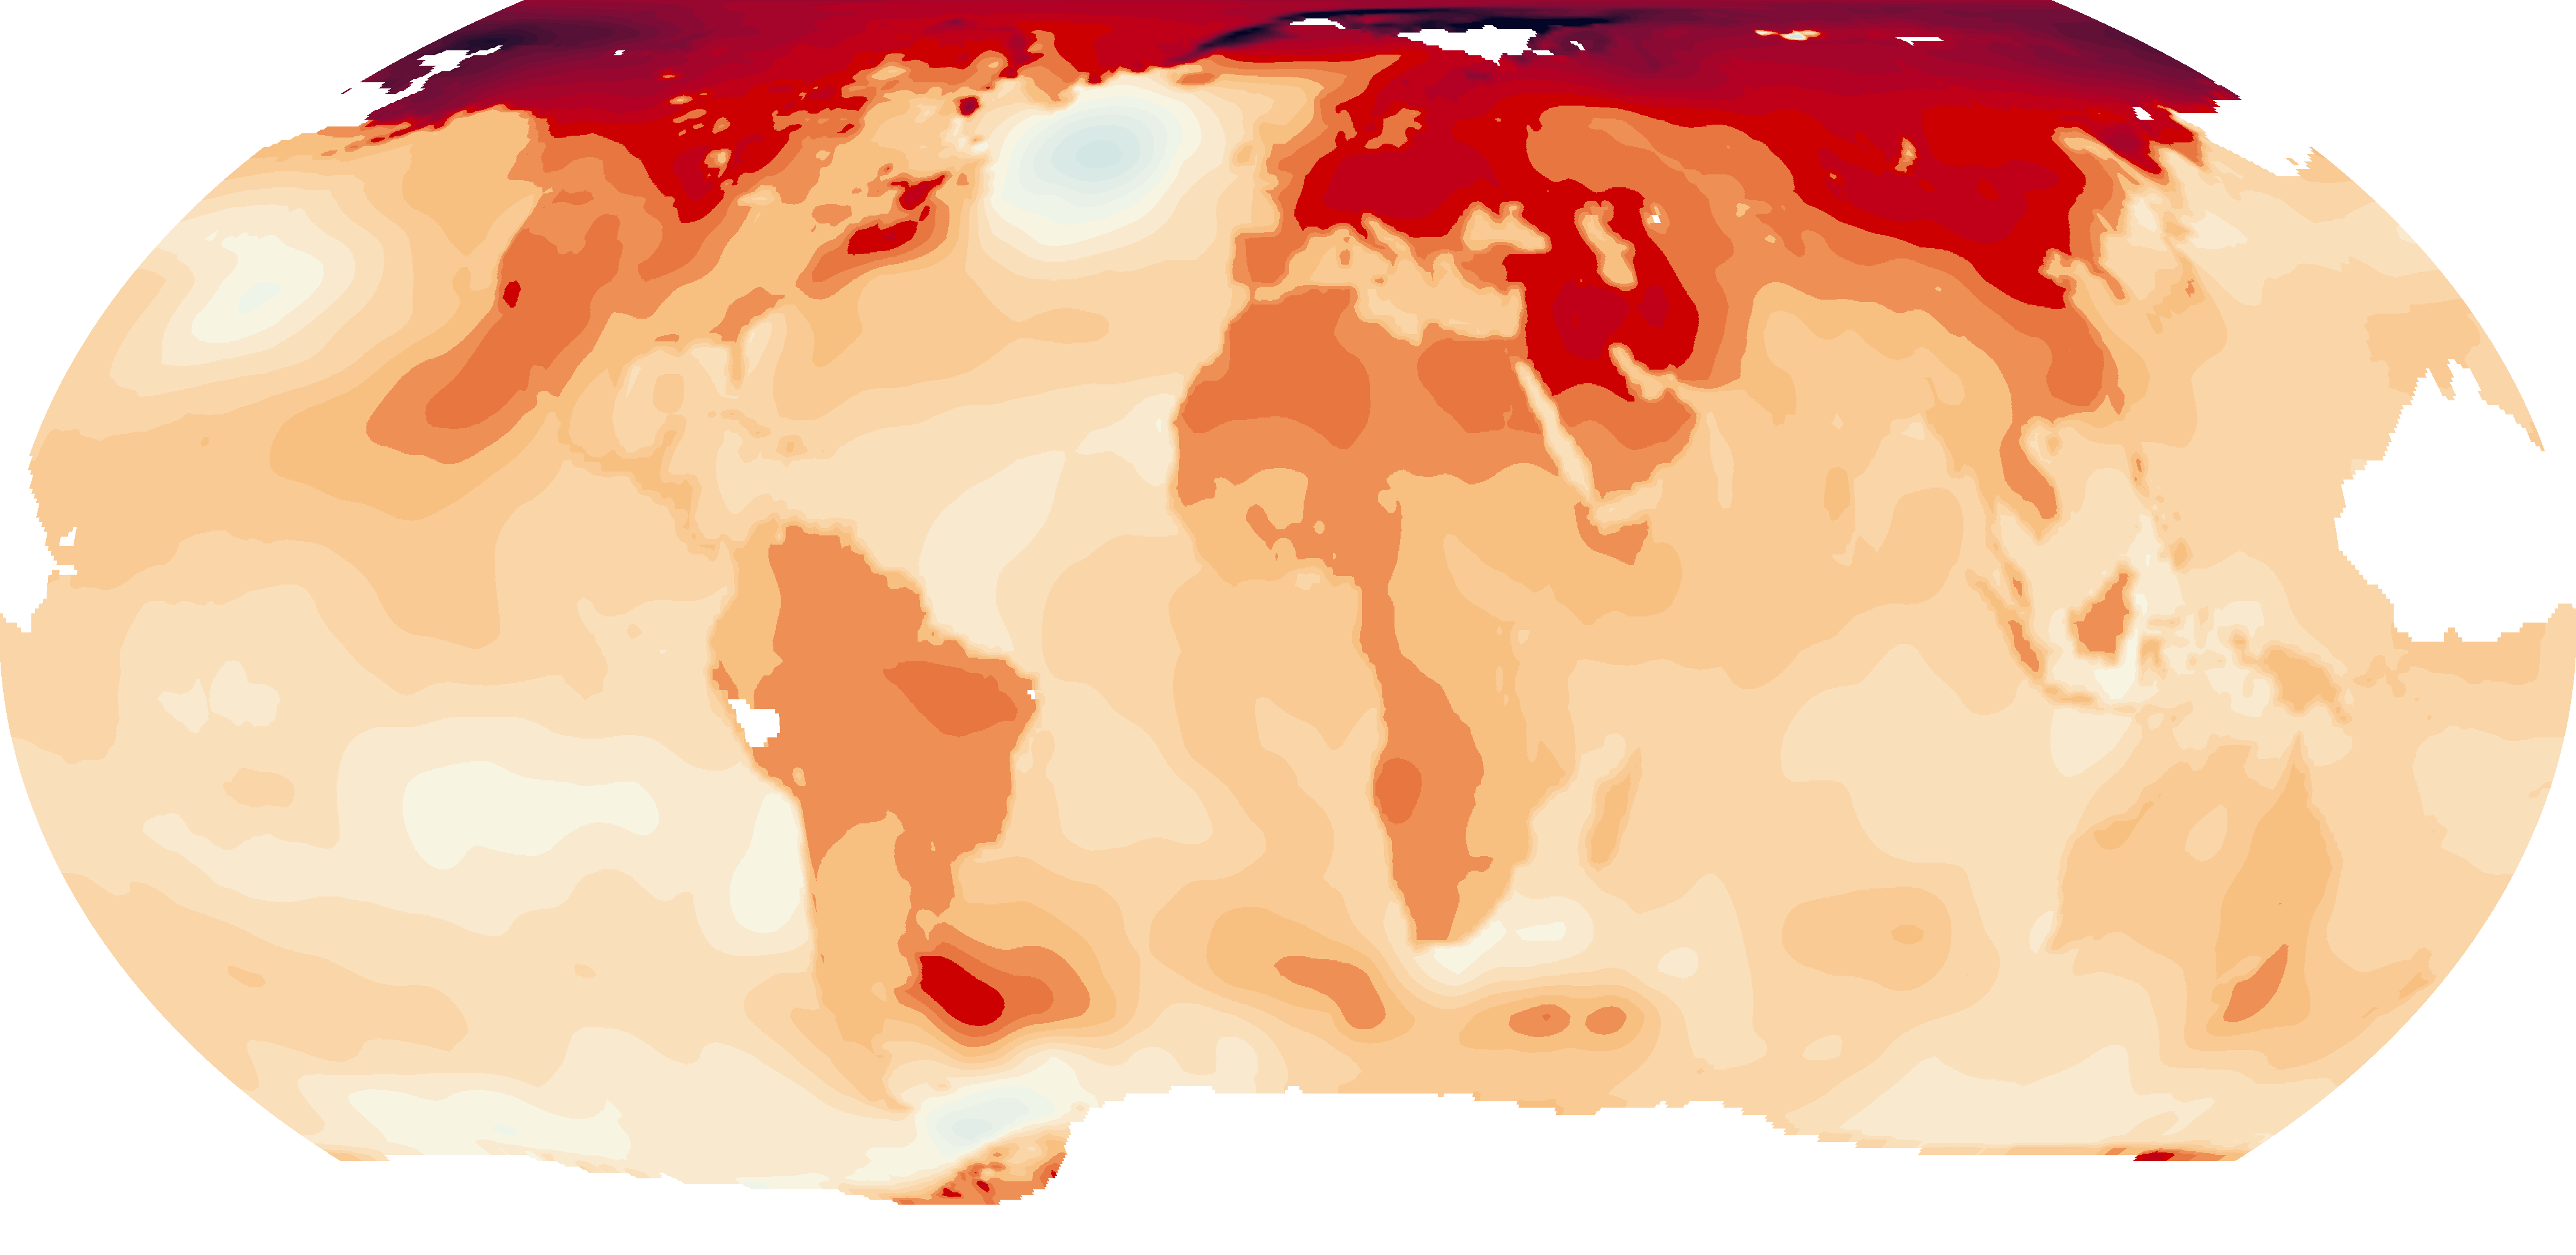 Cet été fixés des centaines de température des records dans le monde entier